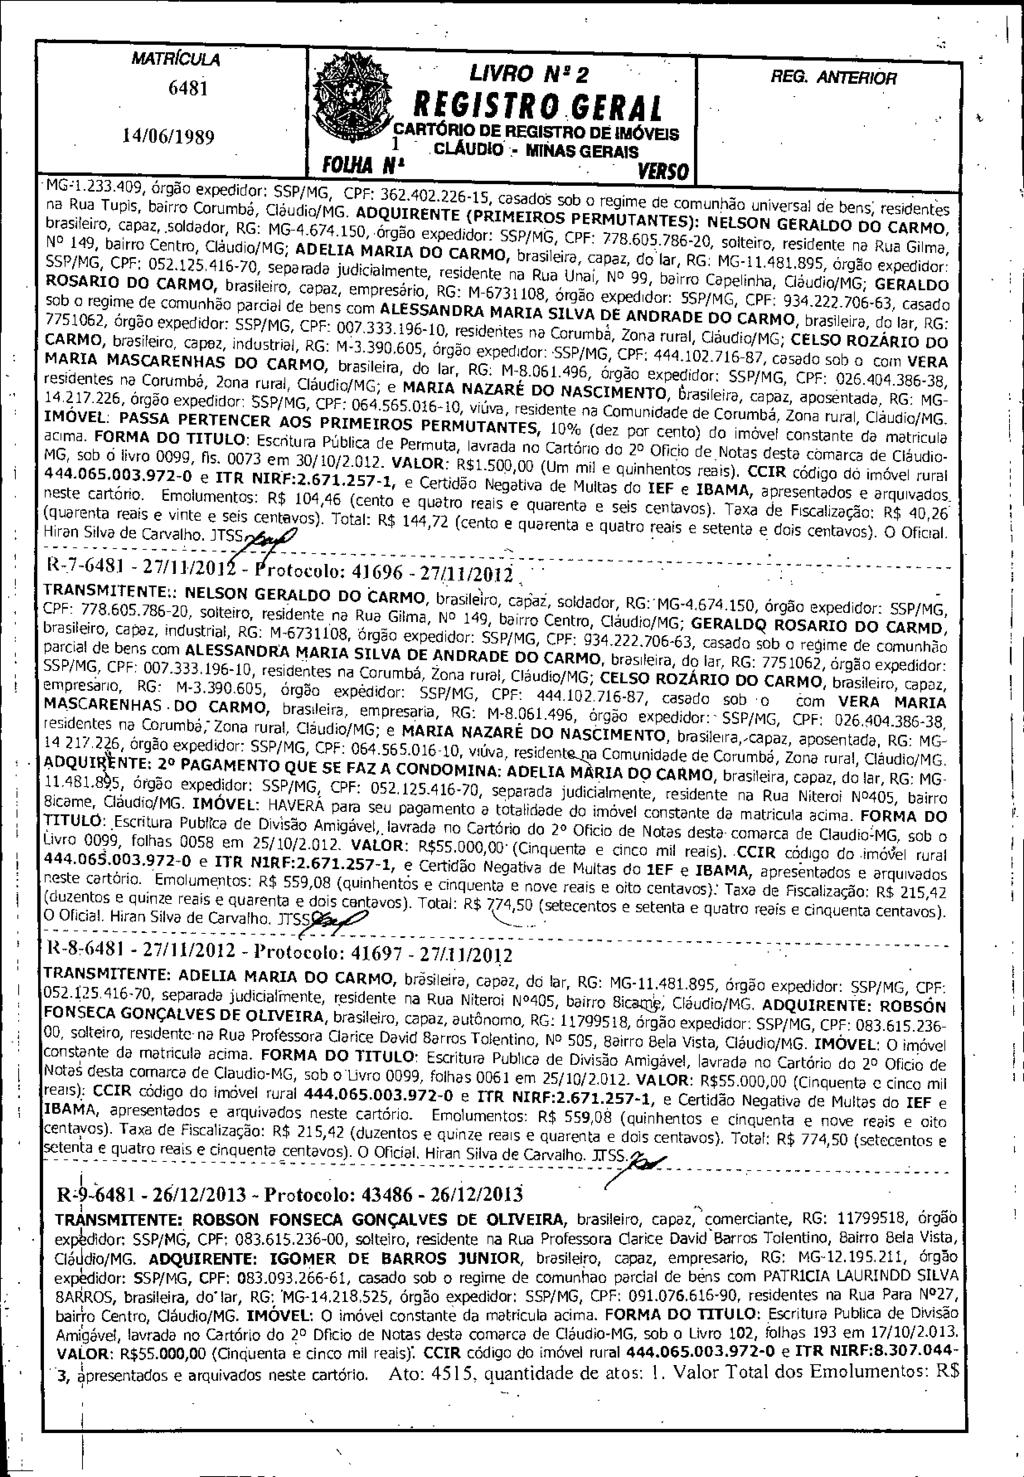 14/06/1989 - LIVRO N 2 2 REGISTRO.GERAL 1 j.dlaudid - MINAS GERAIS FOLHA til VERSO - MG:1.233.409, órgão expedidor: SSP/MG, CPF: 362.402.